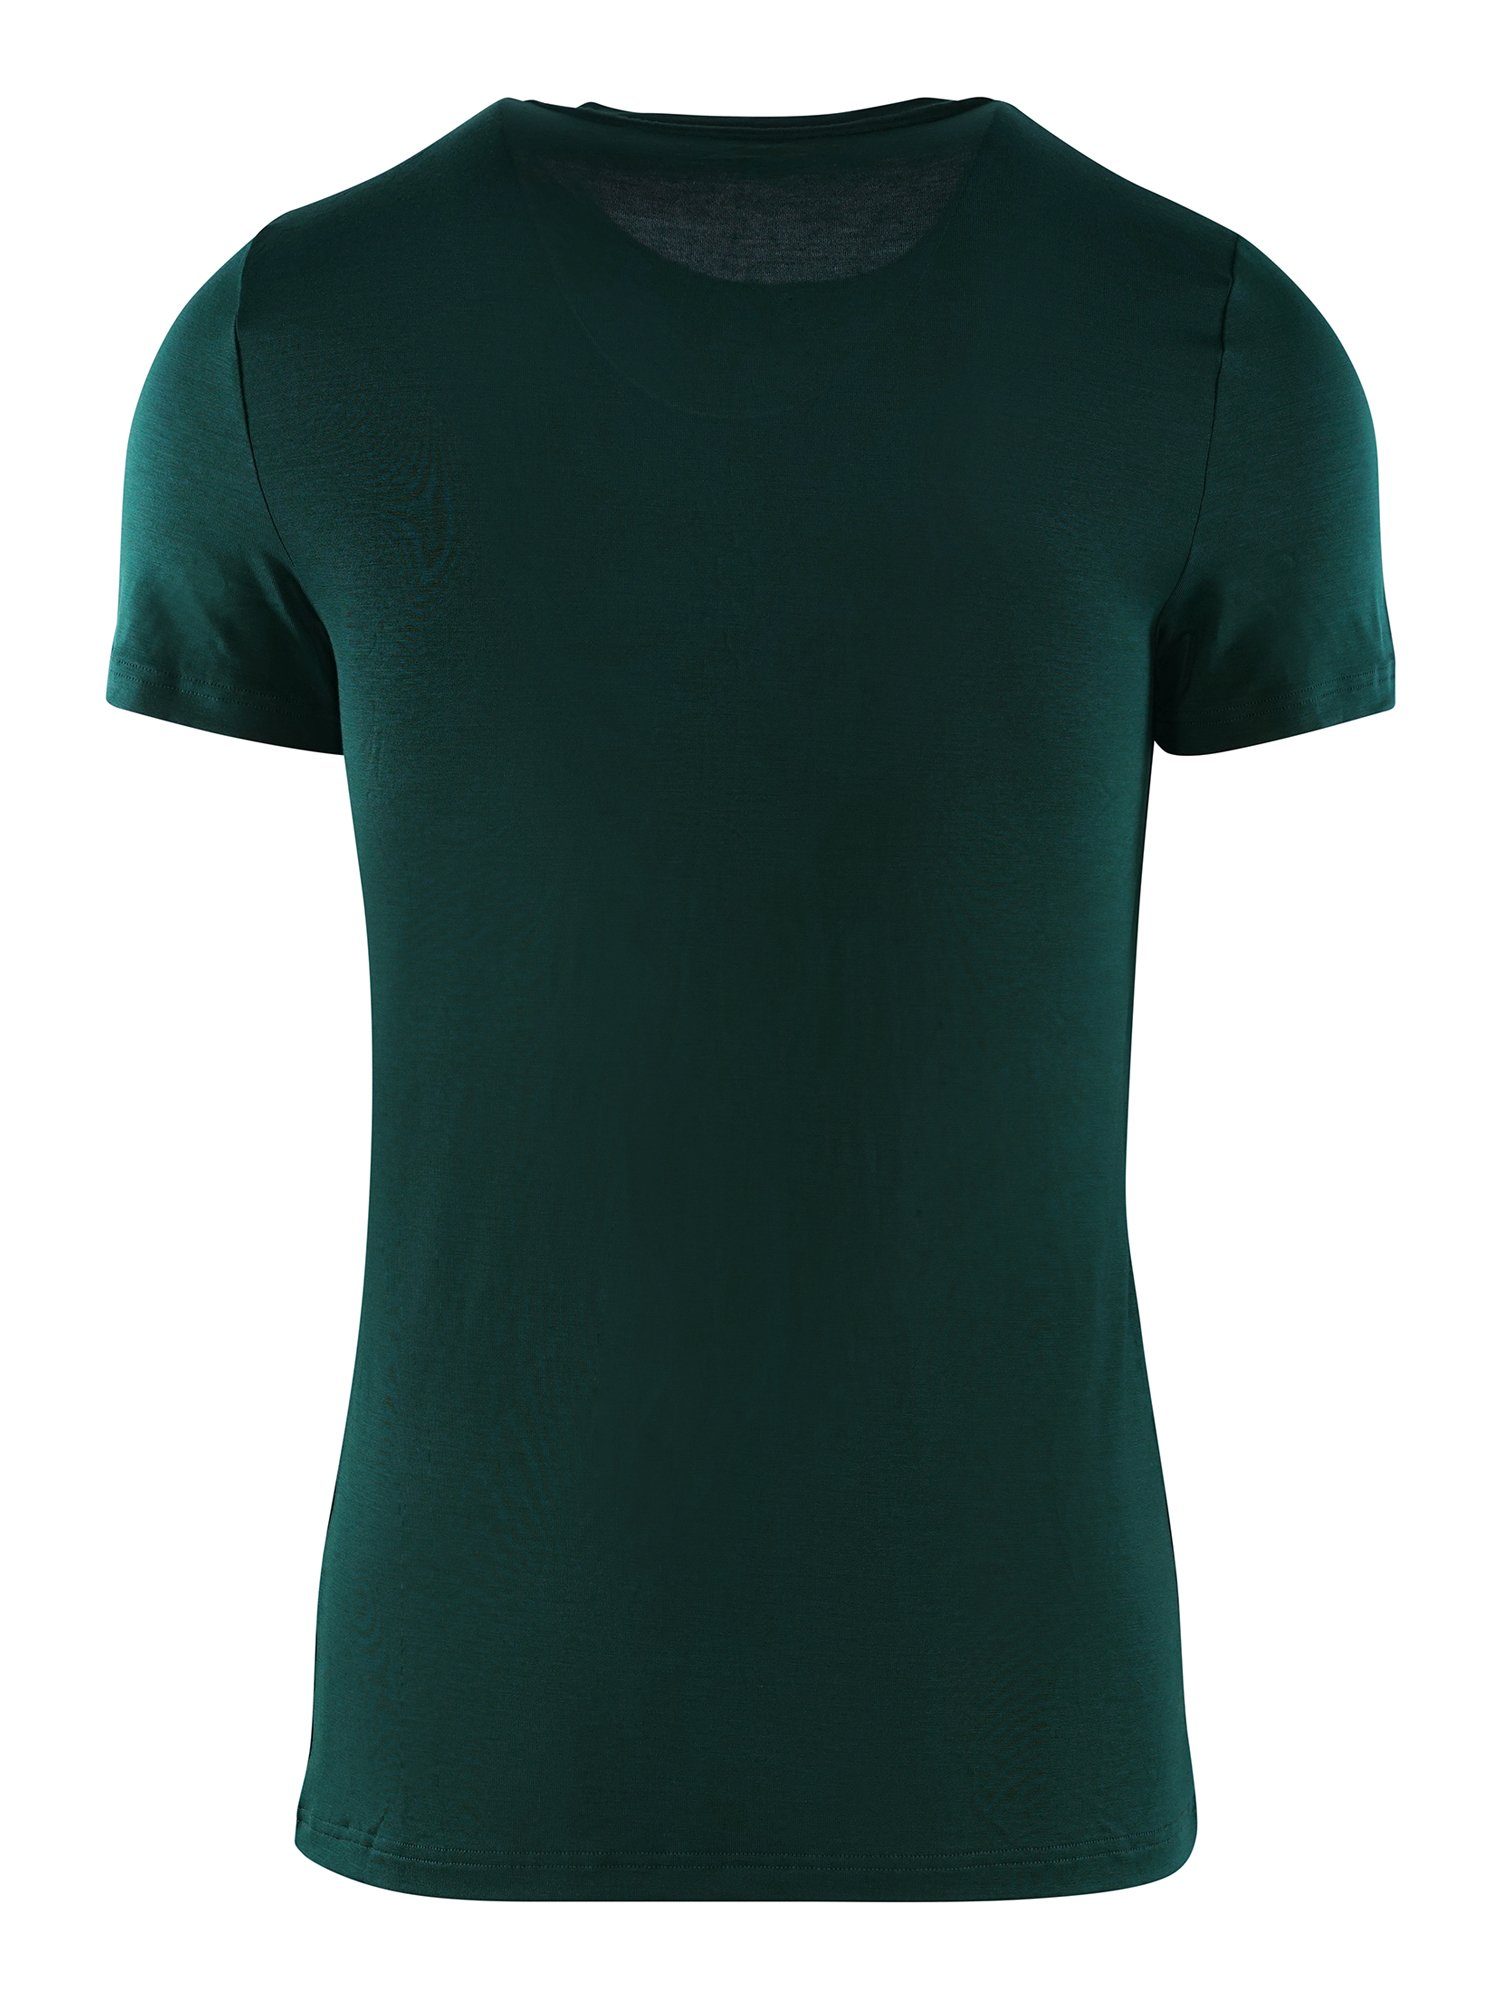 Hom unterziehshirt Tencel dark T-Shirt unterhemd green T-Shirt Soft